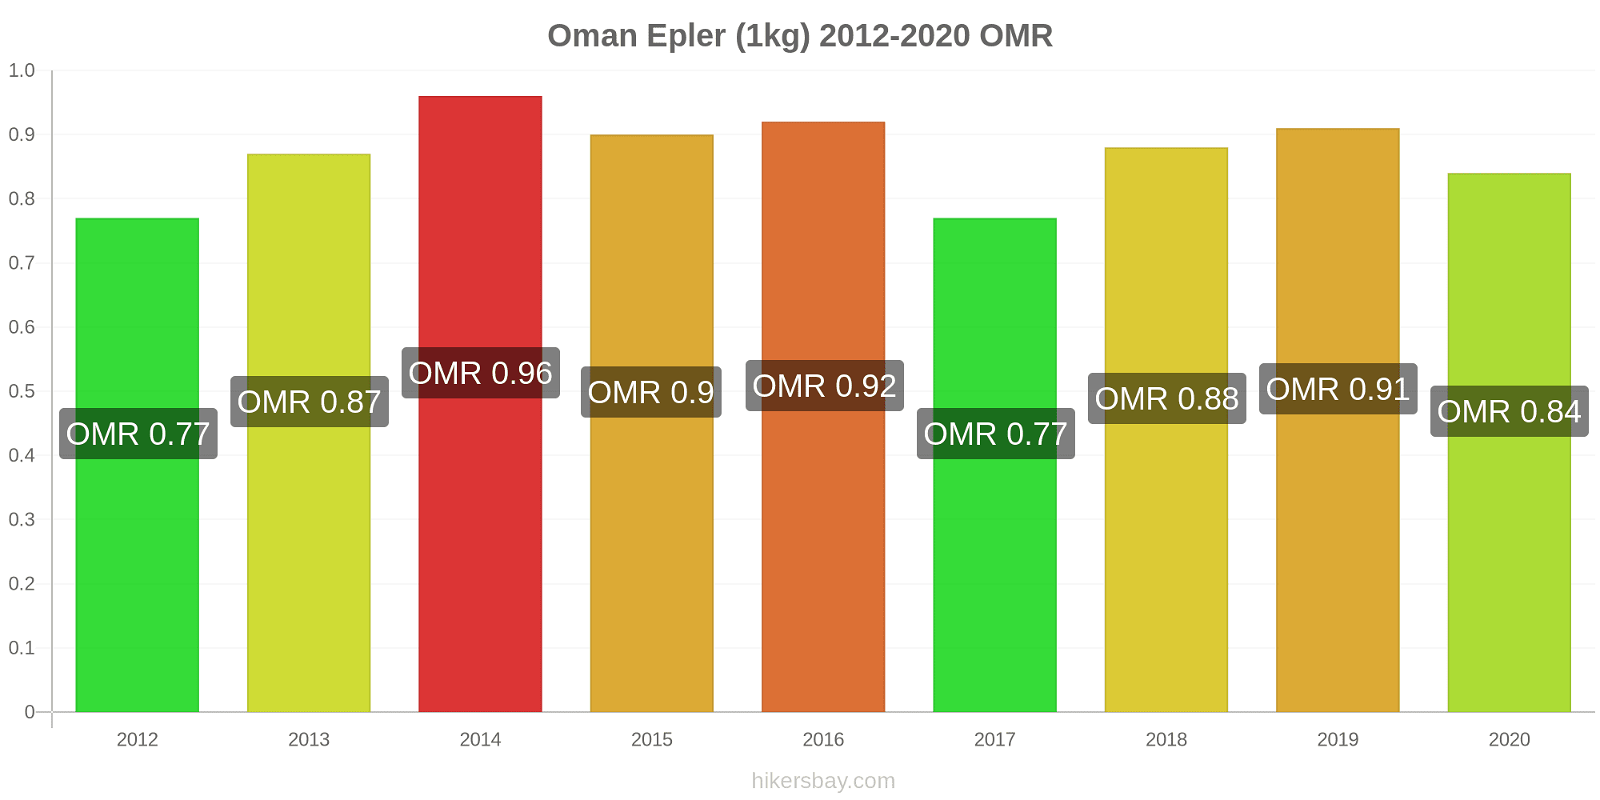 Oman prisendringer Epler (1kg) hikersbay.com